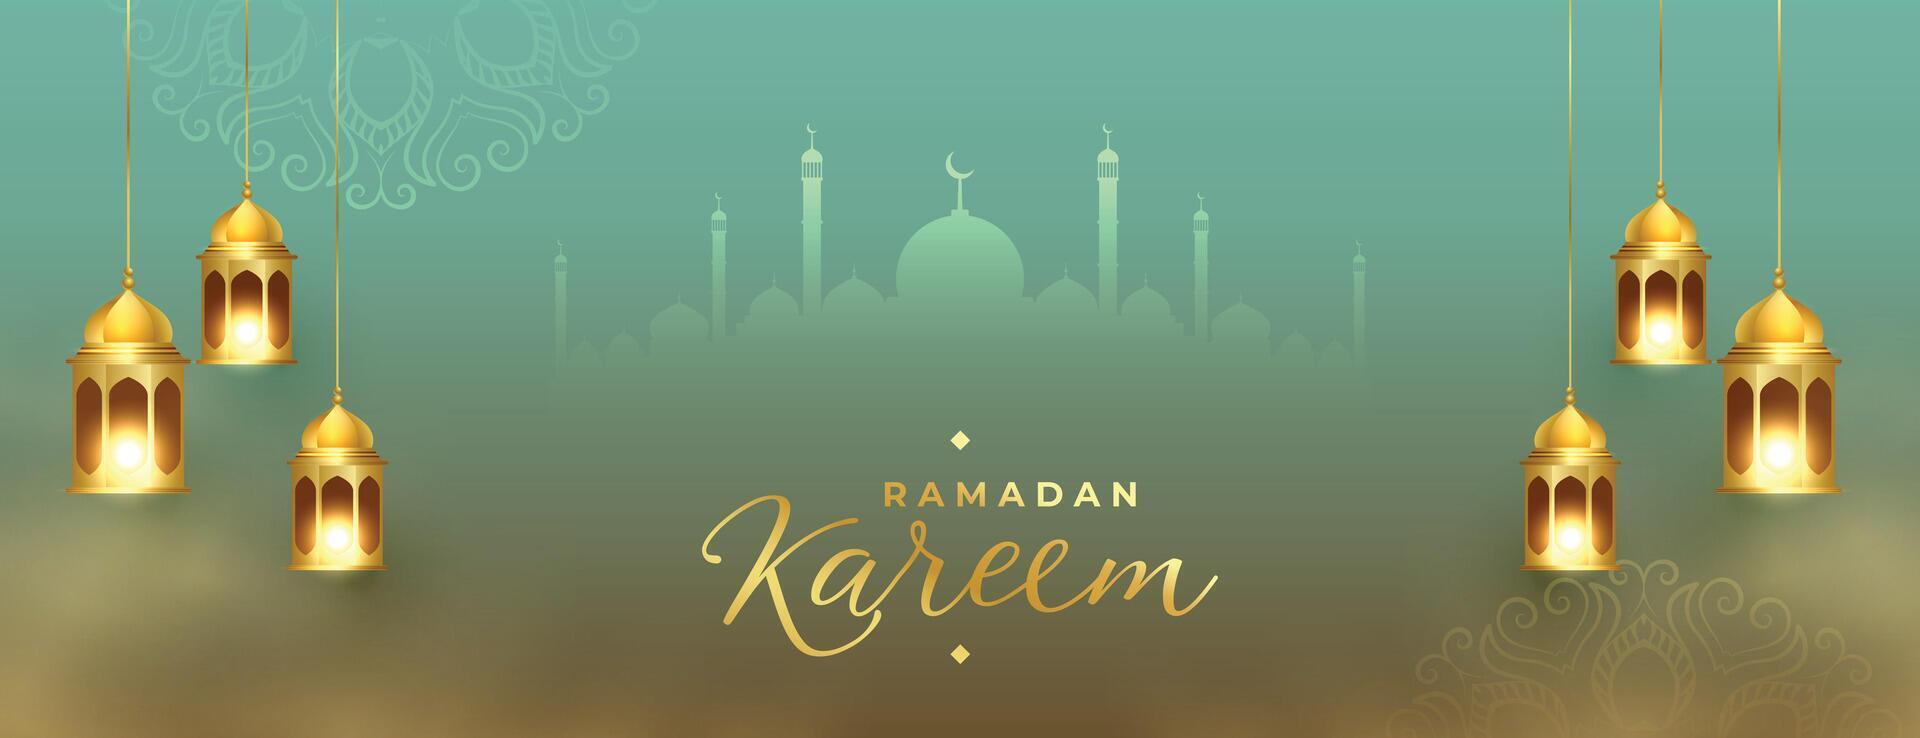 ramadan kareem golden lantern eid festival beautiful banner design vector